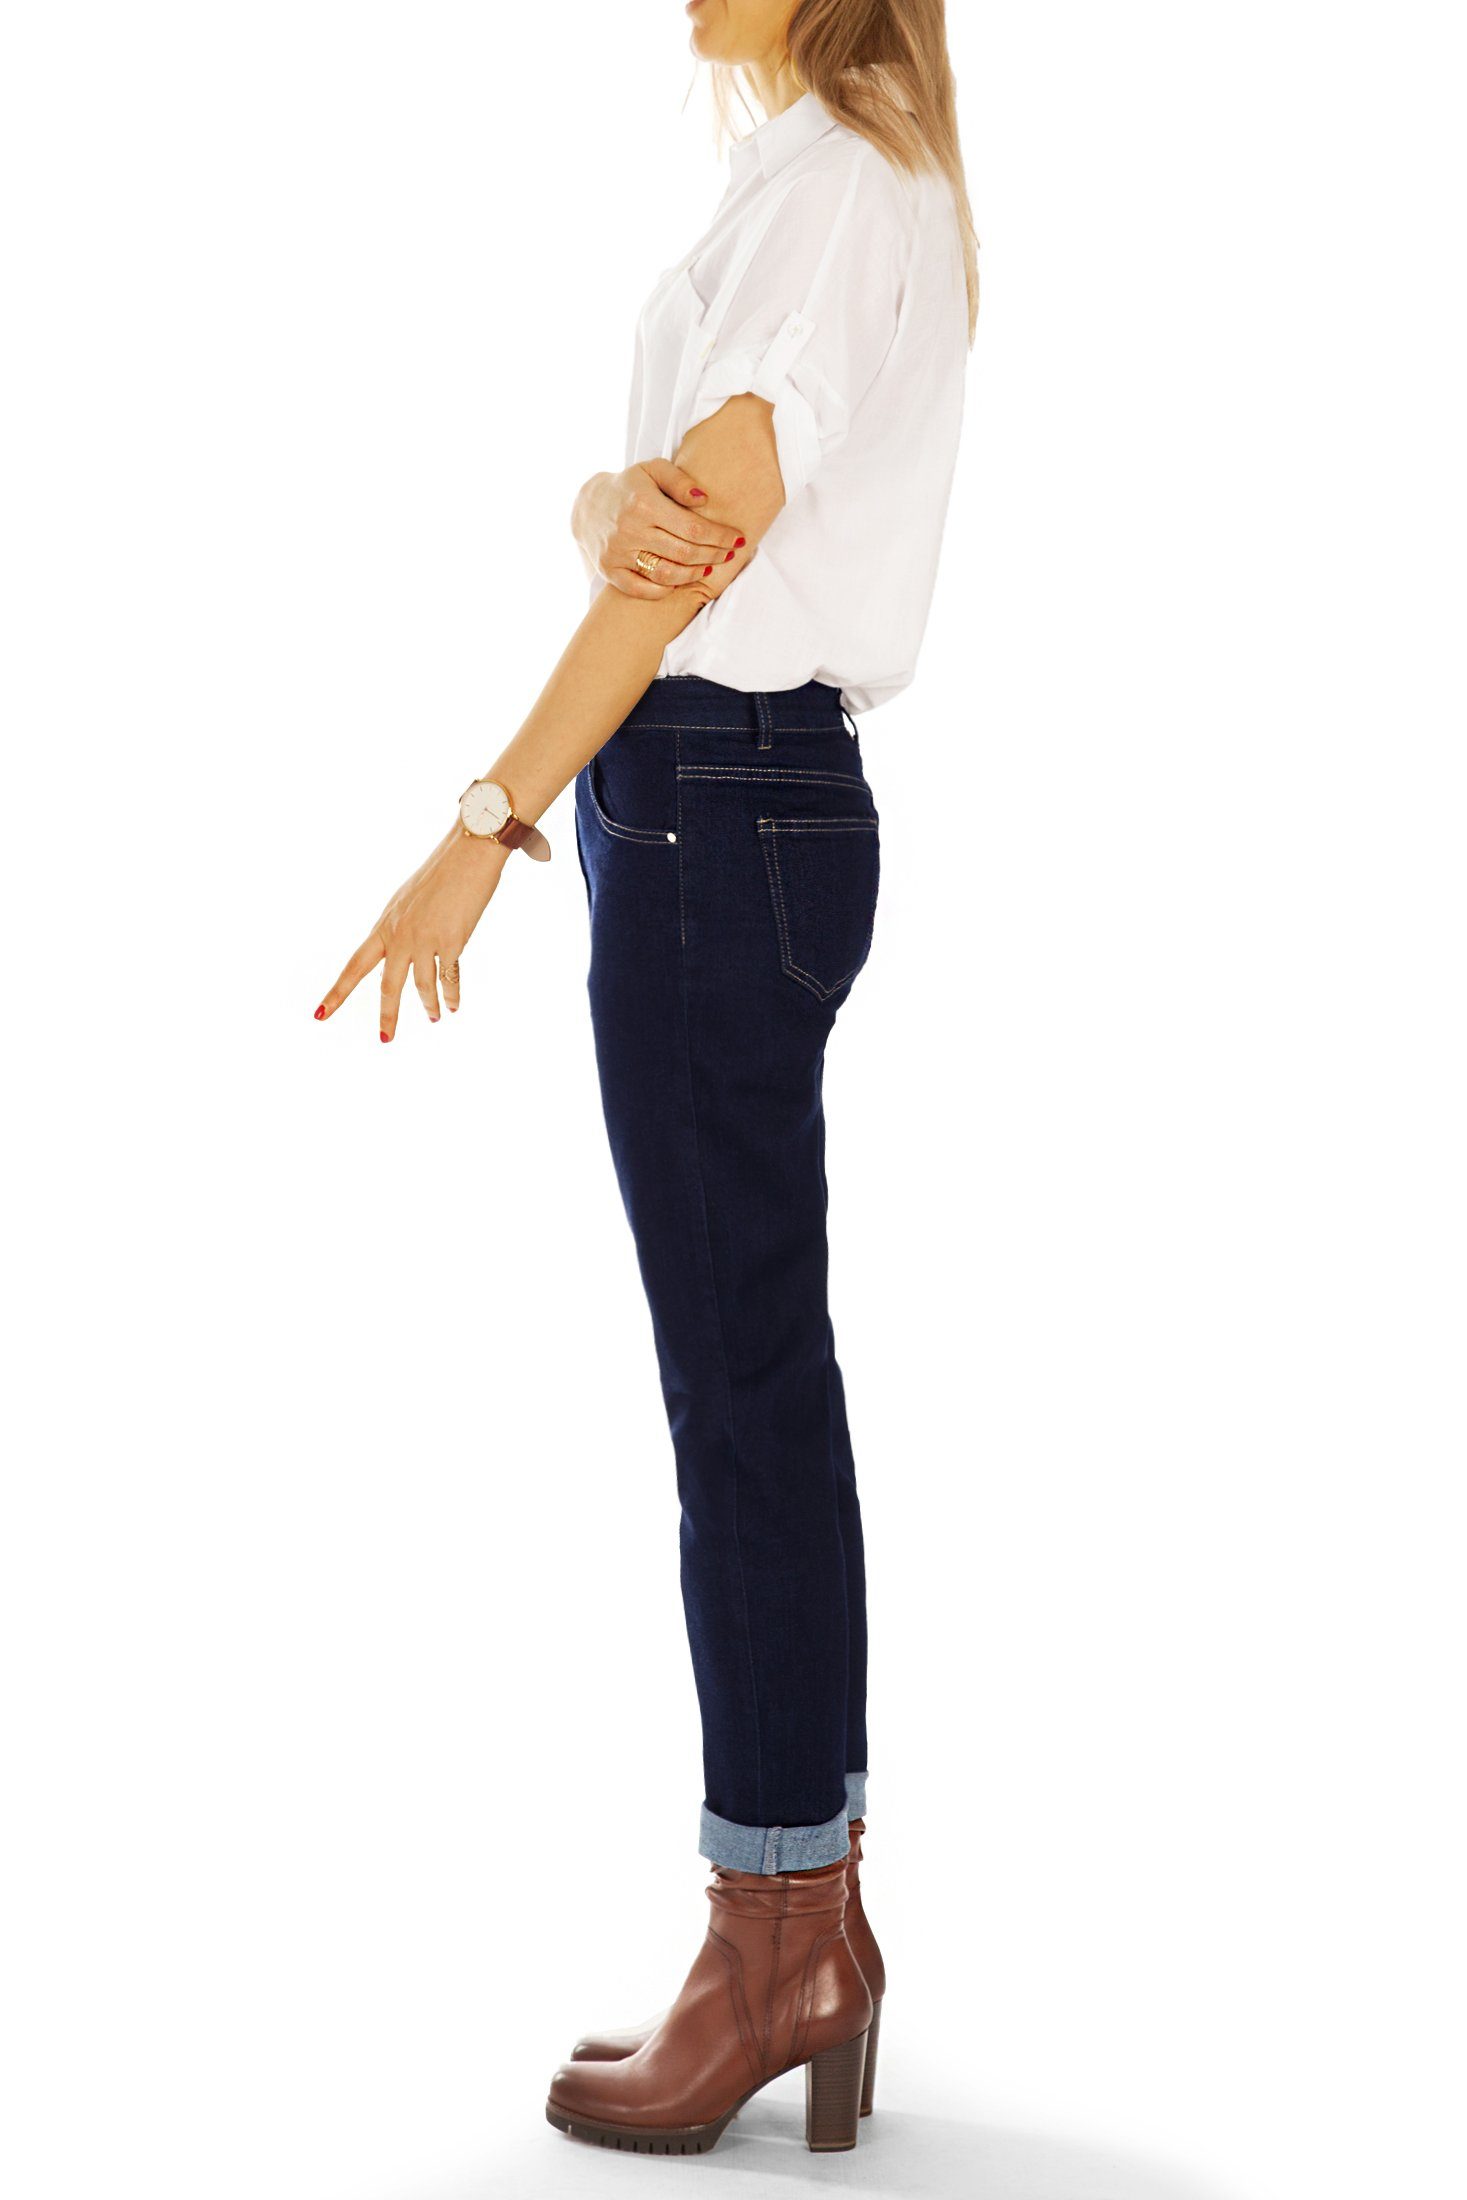 Jeans - Reißverschluss Damen be Mom-Jeans Mom - Jeans Stretch-Anteil, Boyfriend j3f schräger Hosen mit 5-Pocket-Style, Waist styled Medium